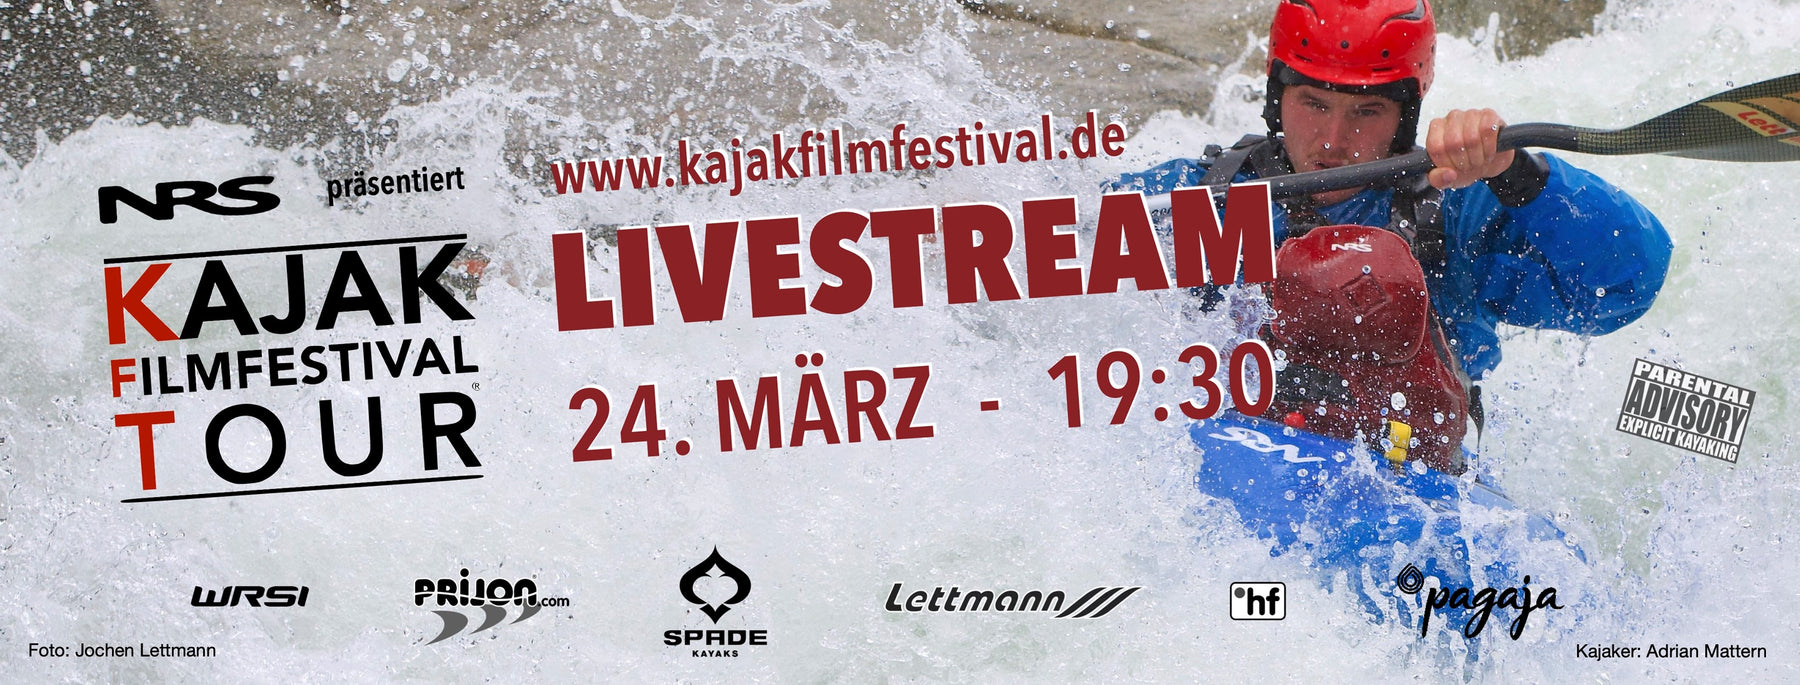 23. Kajakfilmfestival - Livestream am 24. März um 19:30 (Info, Trailer und Link zum Livestream)